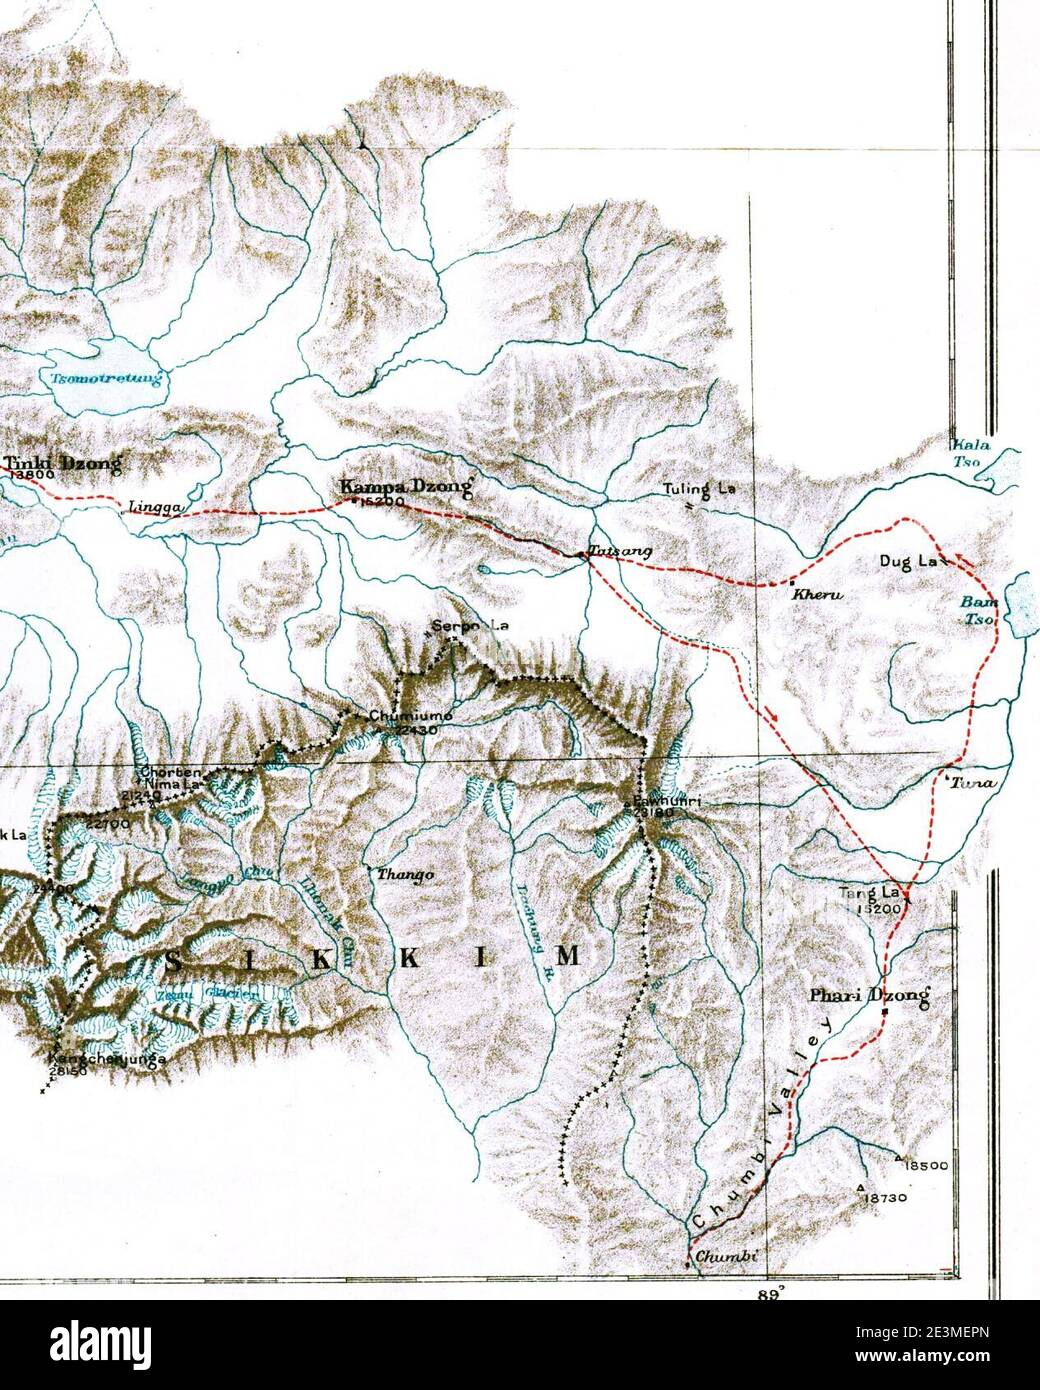 Mappa di Sikkim, Chumbi, Valle Chumbi del Tibet, tonno, Phari Dzong, Kampa Dzong, Tinki Dzong, Tsomo Tretung, Tang la Chorten Nima la e Kanchenjunga, mappa preliminare della spedizione del Monte Everest, 1921. Mappa i (ritagliata). Foto Stock